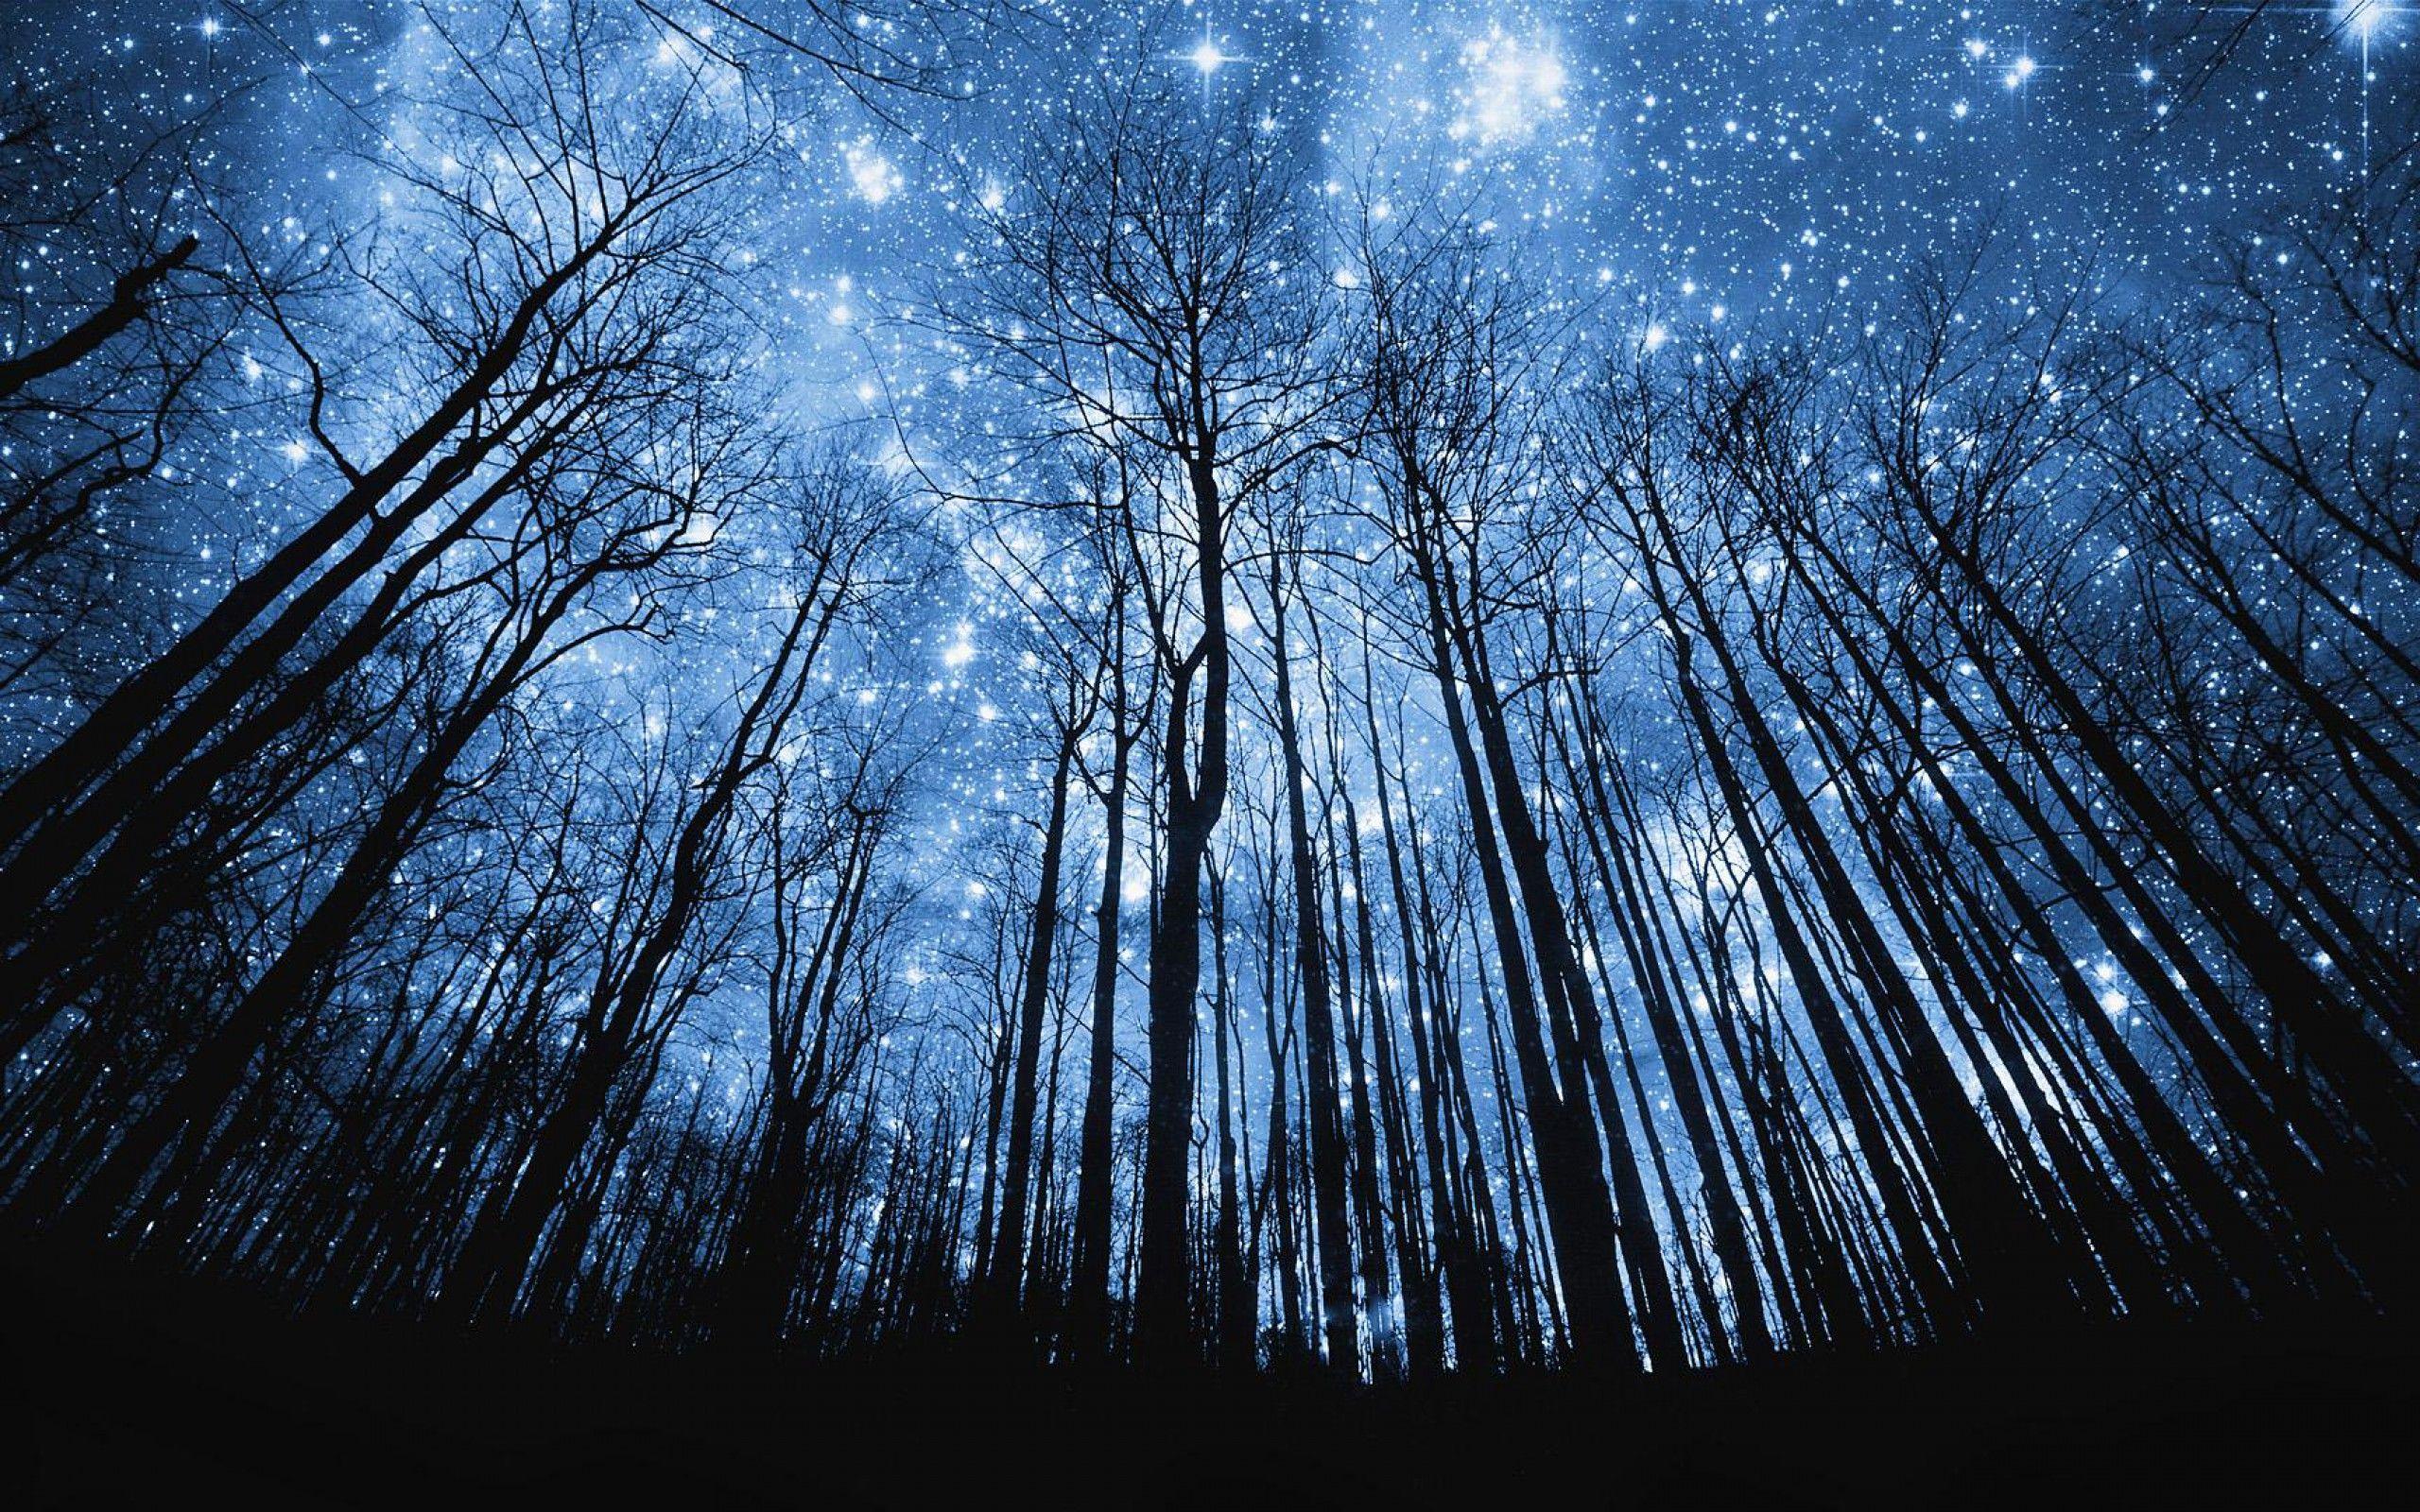 Starry Night Wallpaper (2560×1600). Night Sky Wallpaper, Starry Night Wallpaper, Starry Night Sky